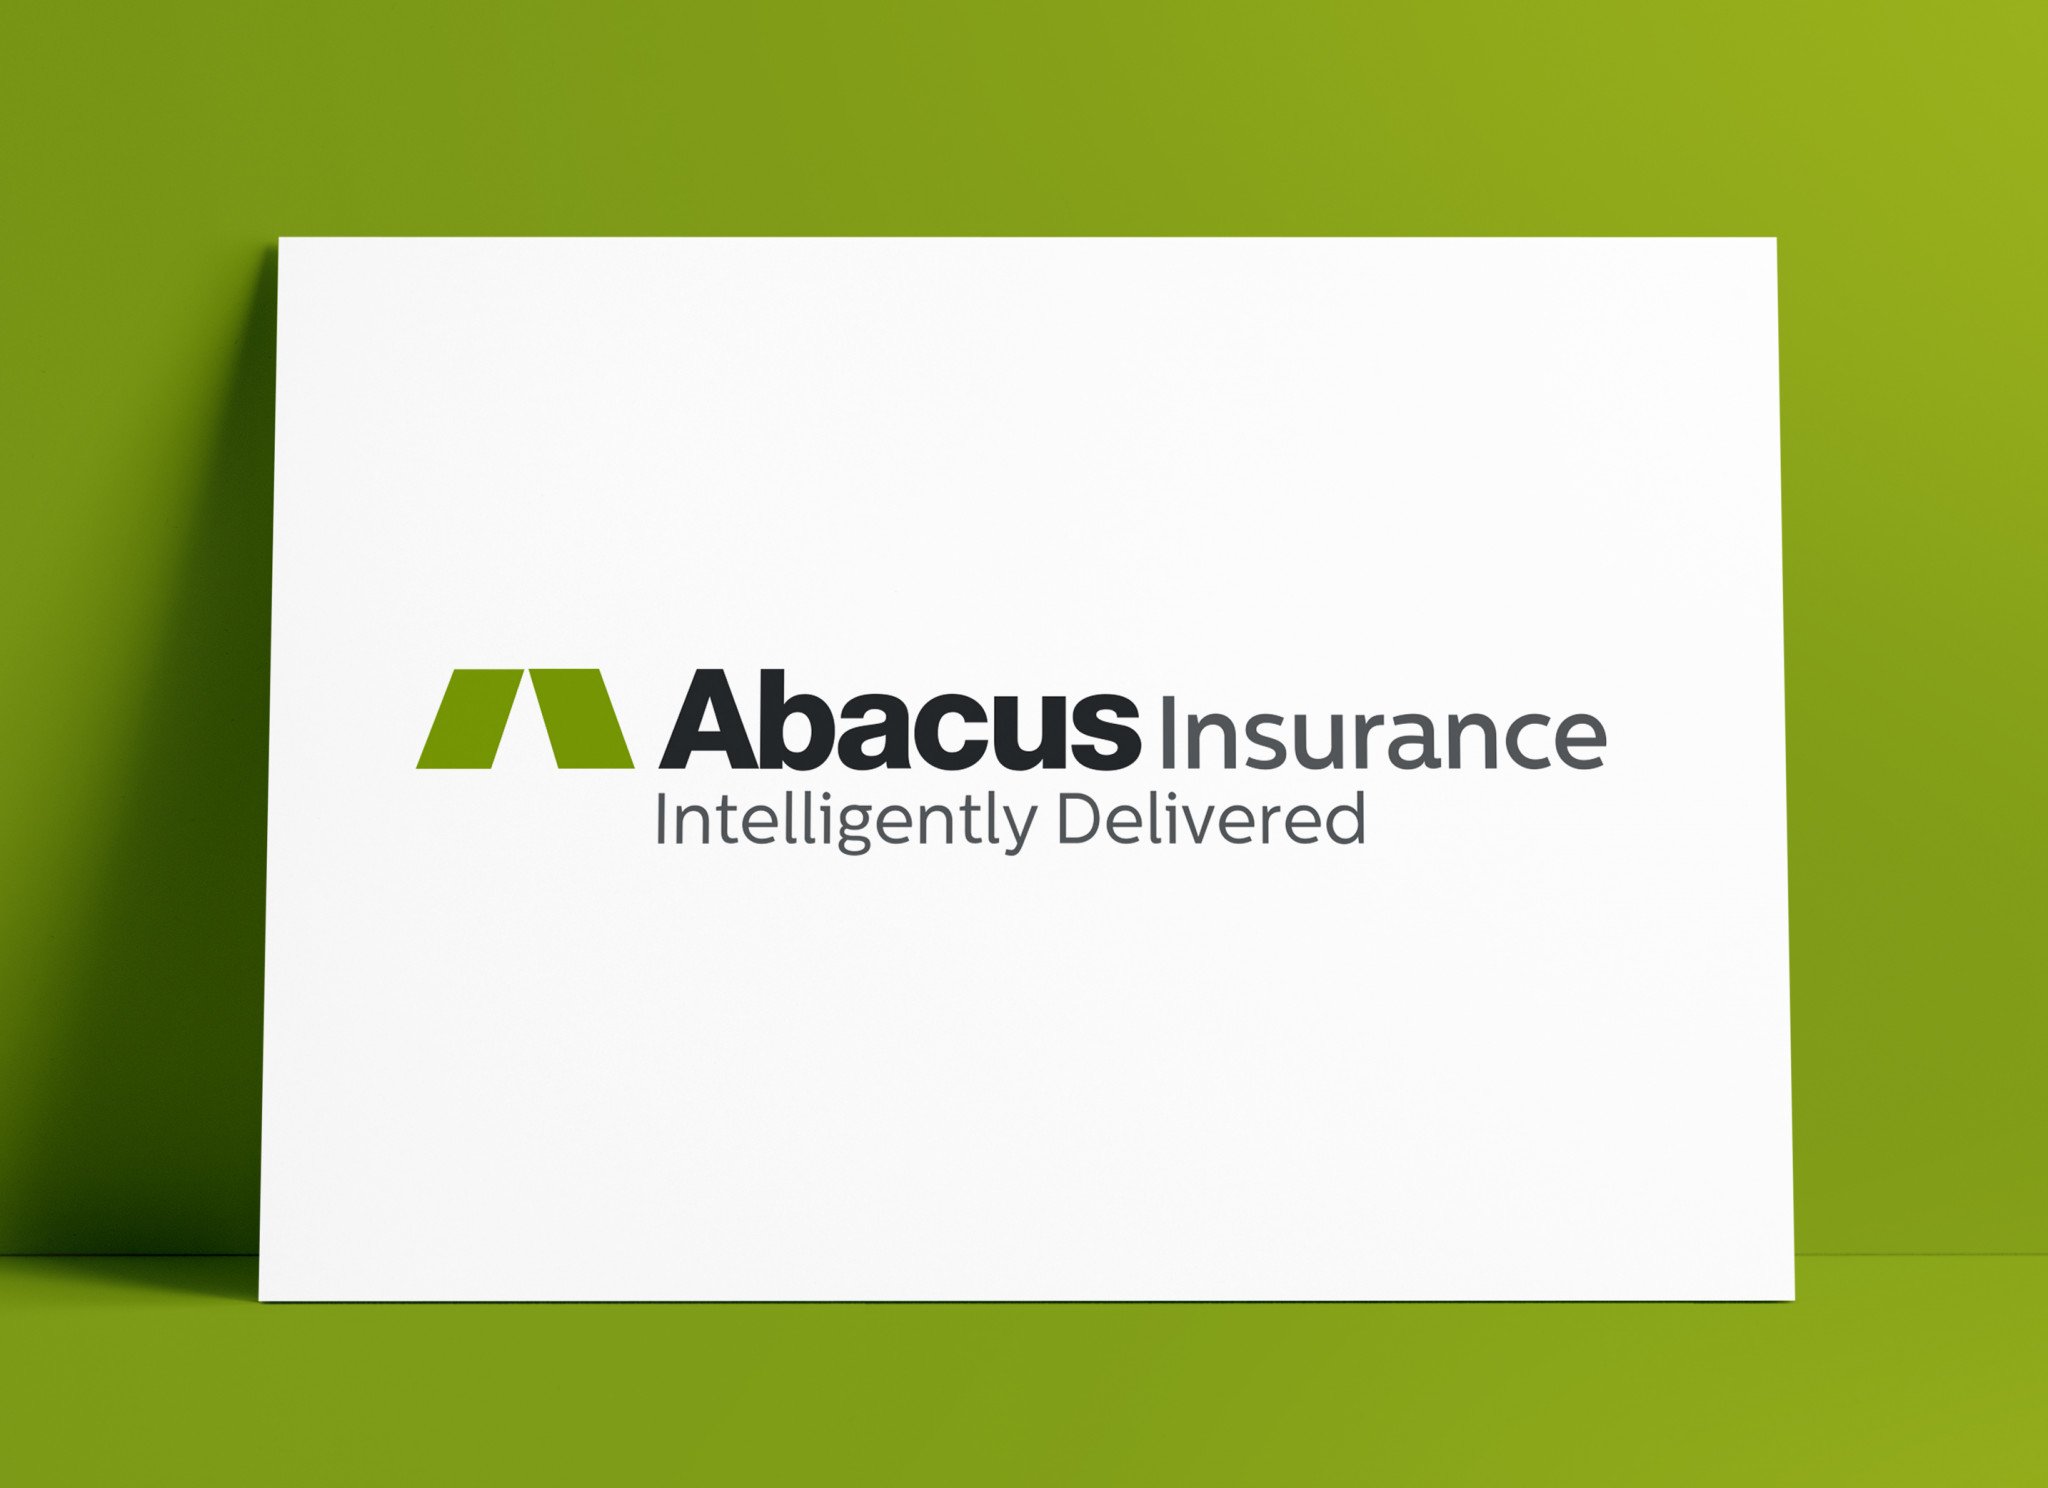 Abacus Insurance Logo & Brand Identity Designed by Freelance Logo Designer The Logo Smith Freelance Logo Designer